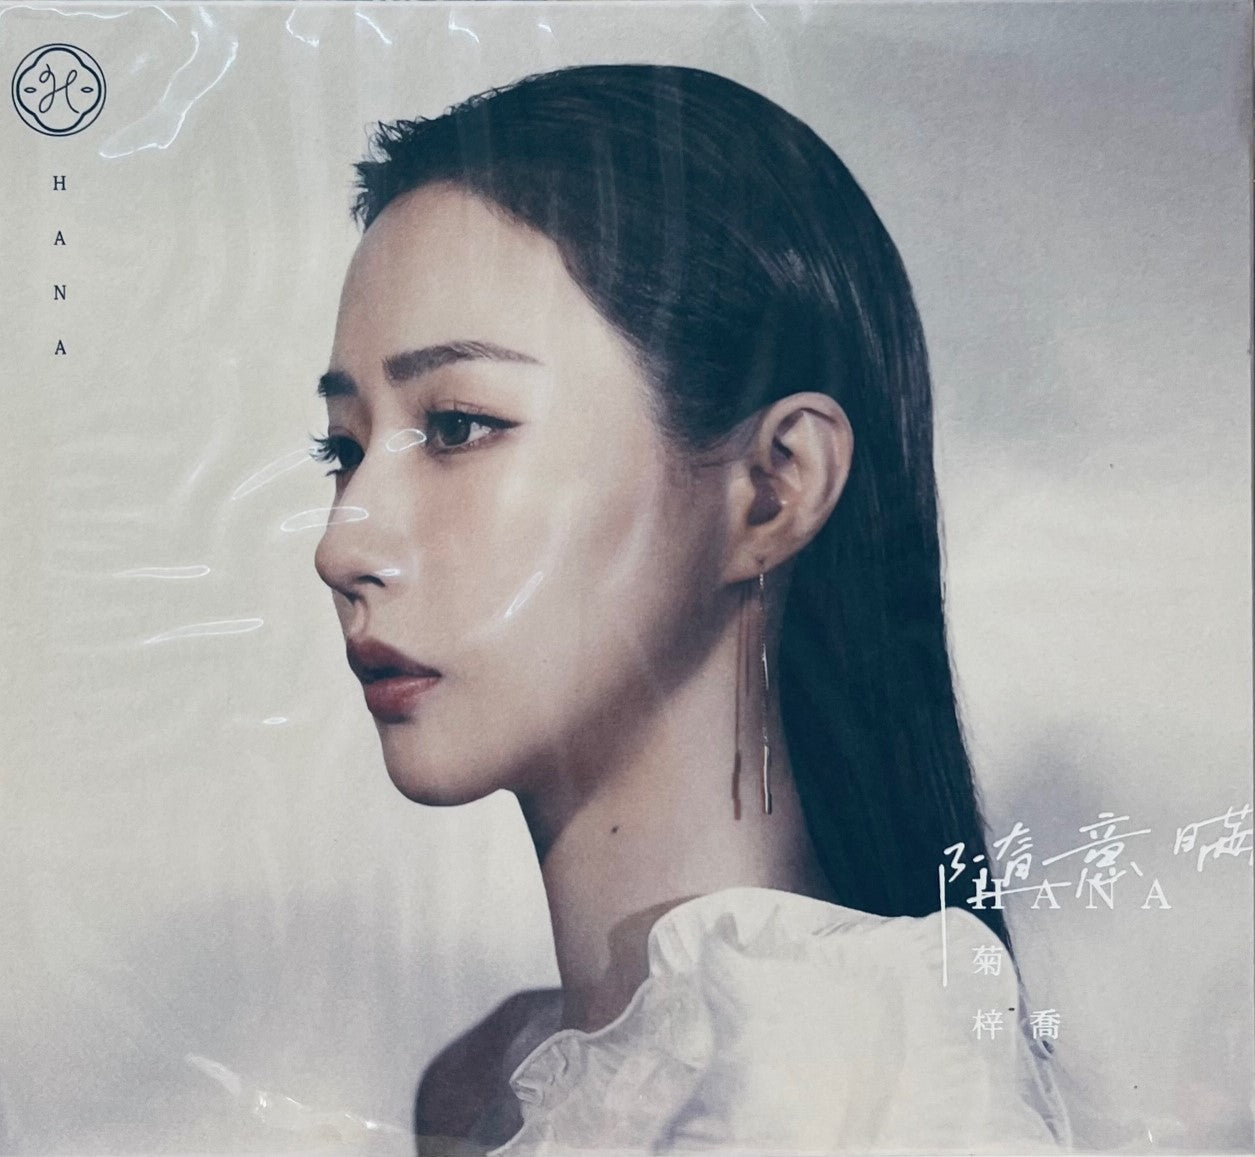 HANA KUK - 菊梓喬 隨意瞞 2023 (CD)